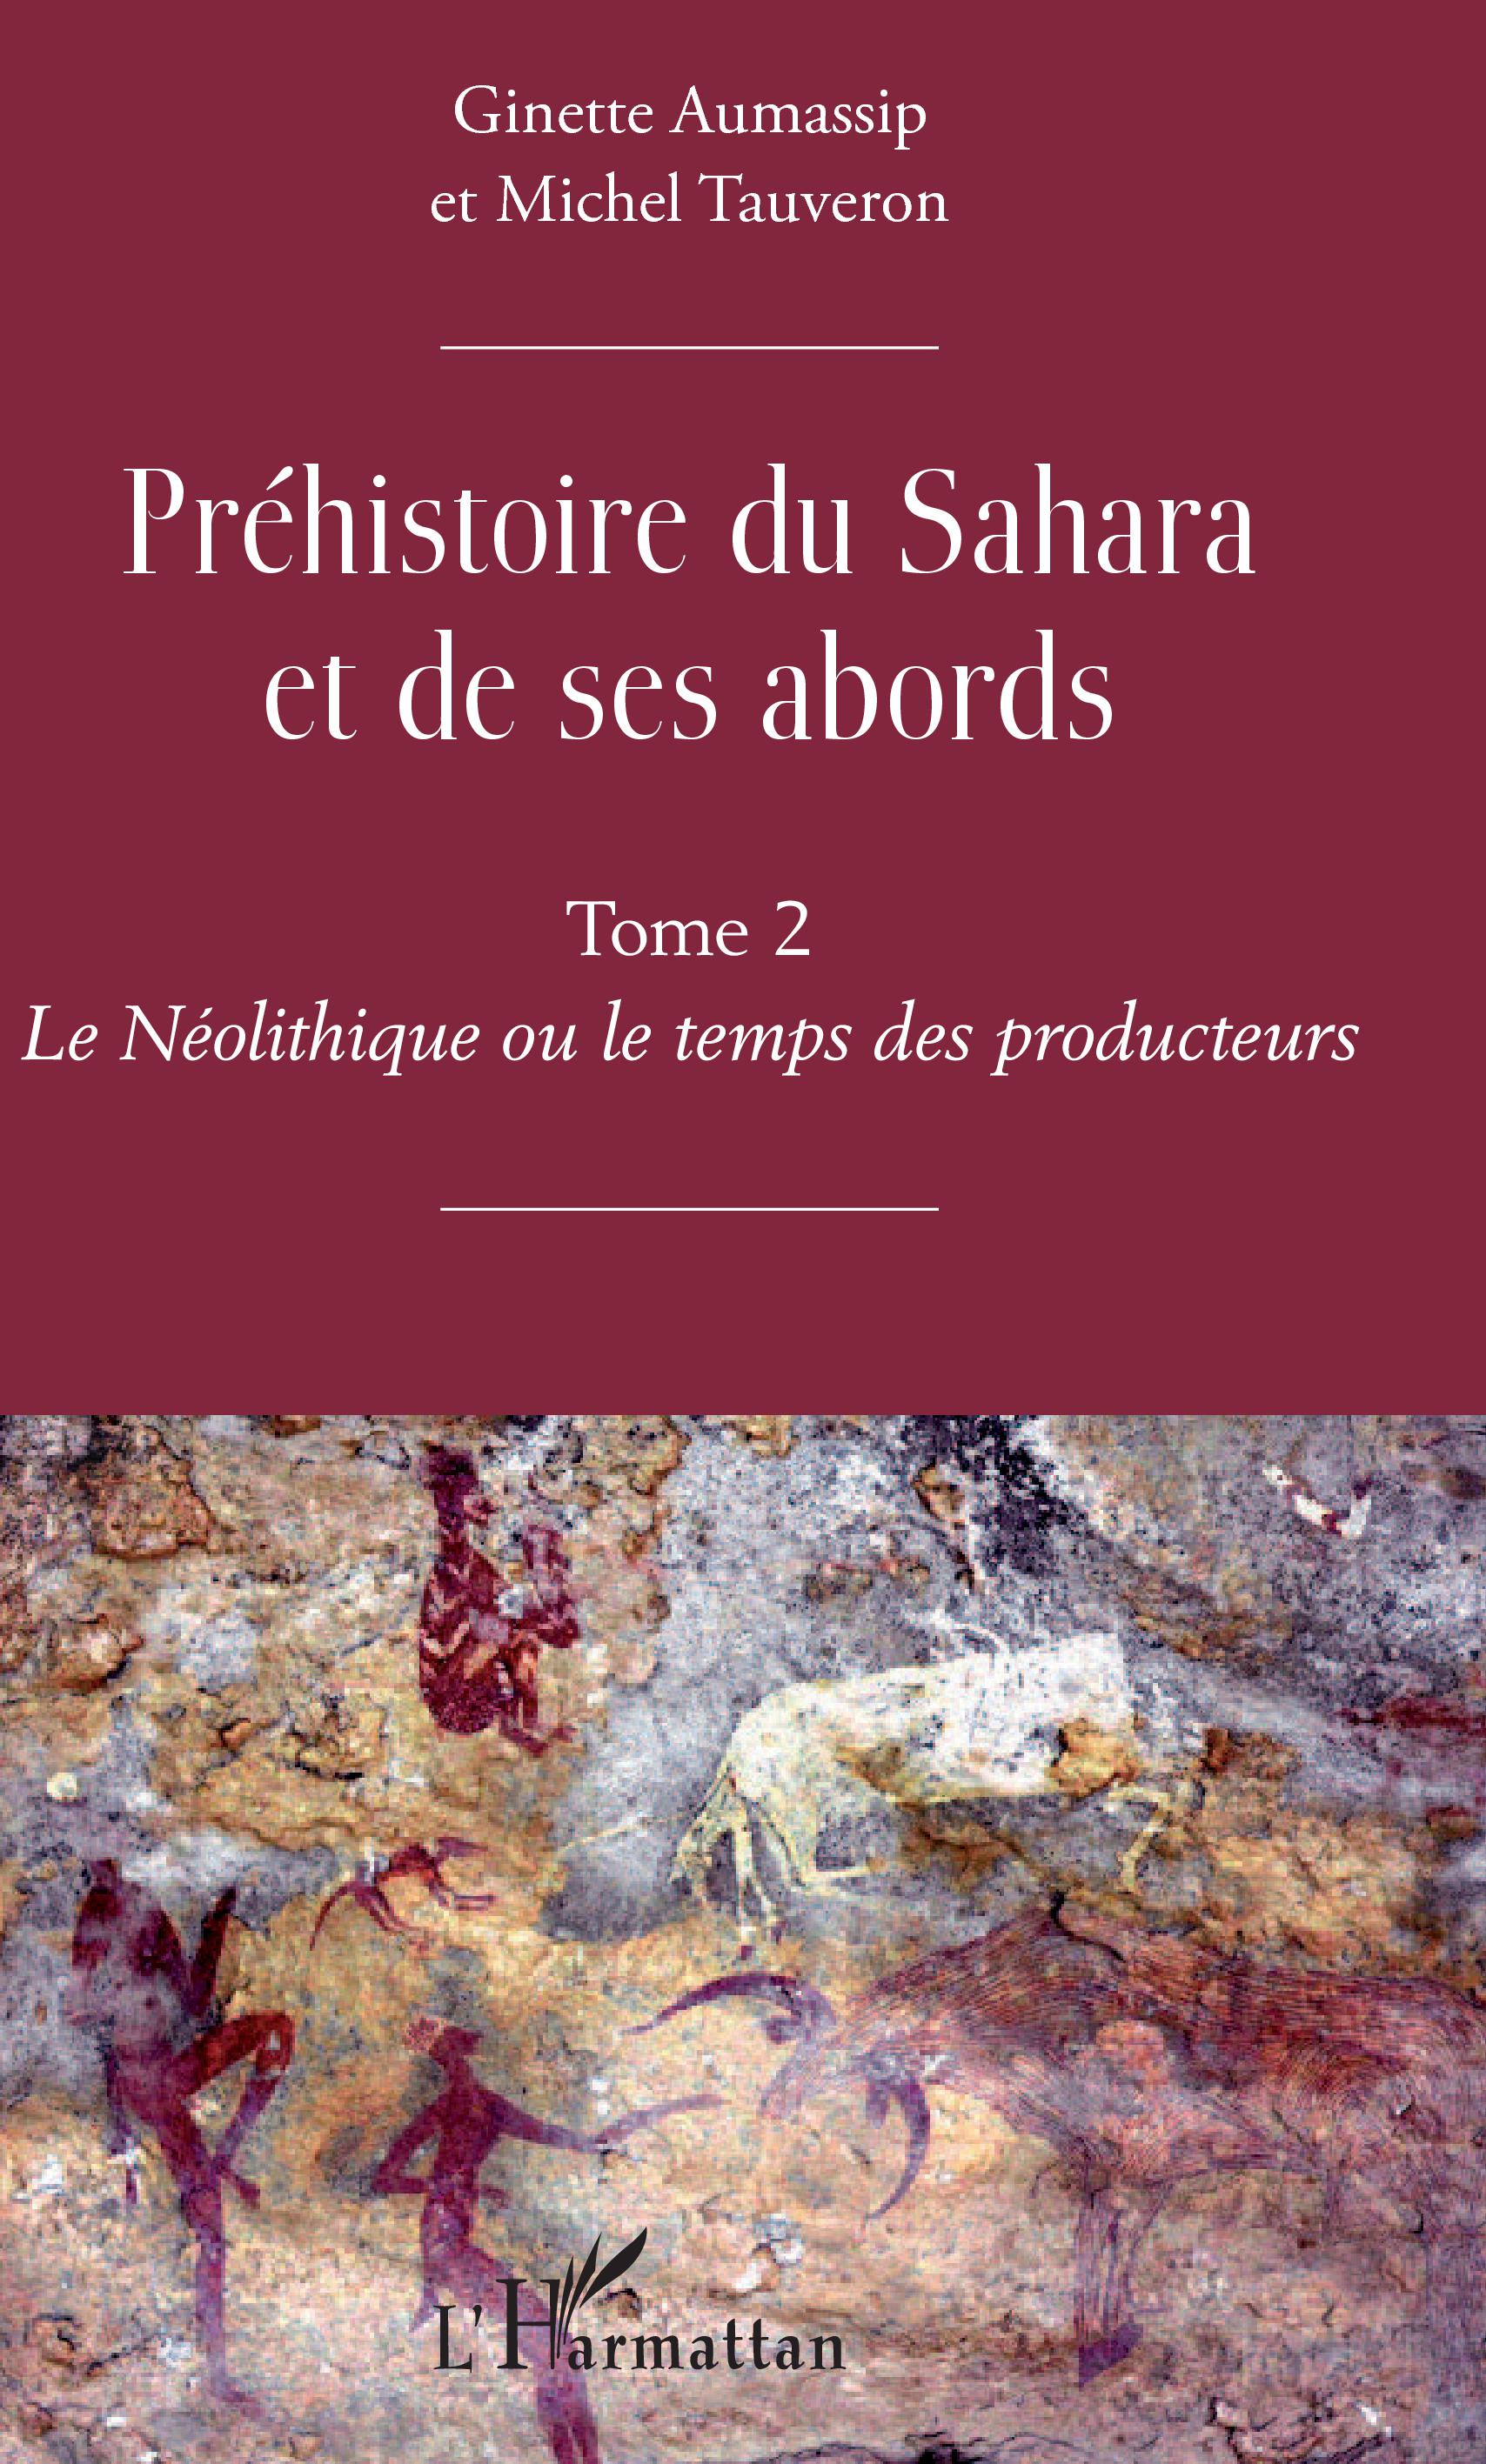 Préhistoire du Sahara et de ses abords. Tome 2. Le Néolithique ou le temps des producteurs, 2019, 652 p.